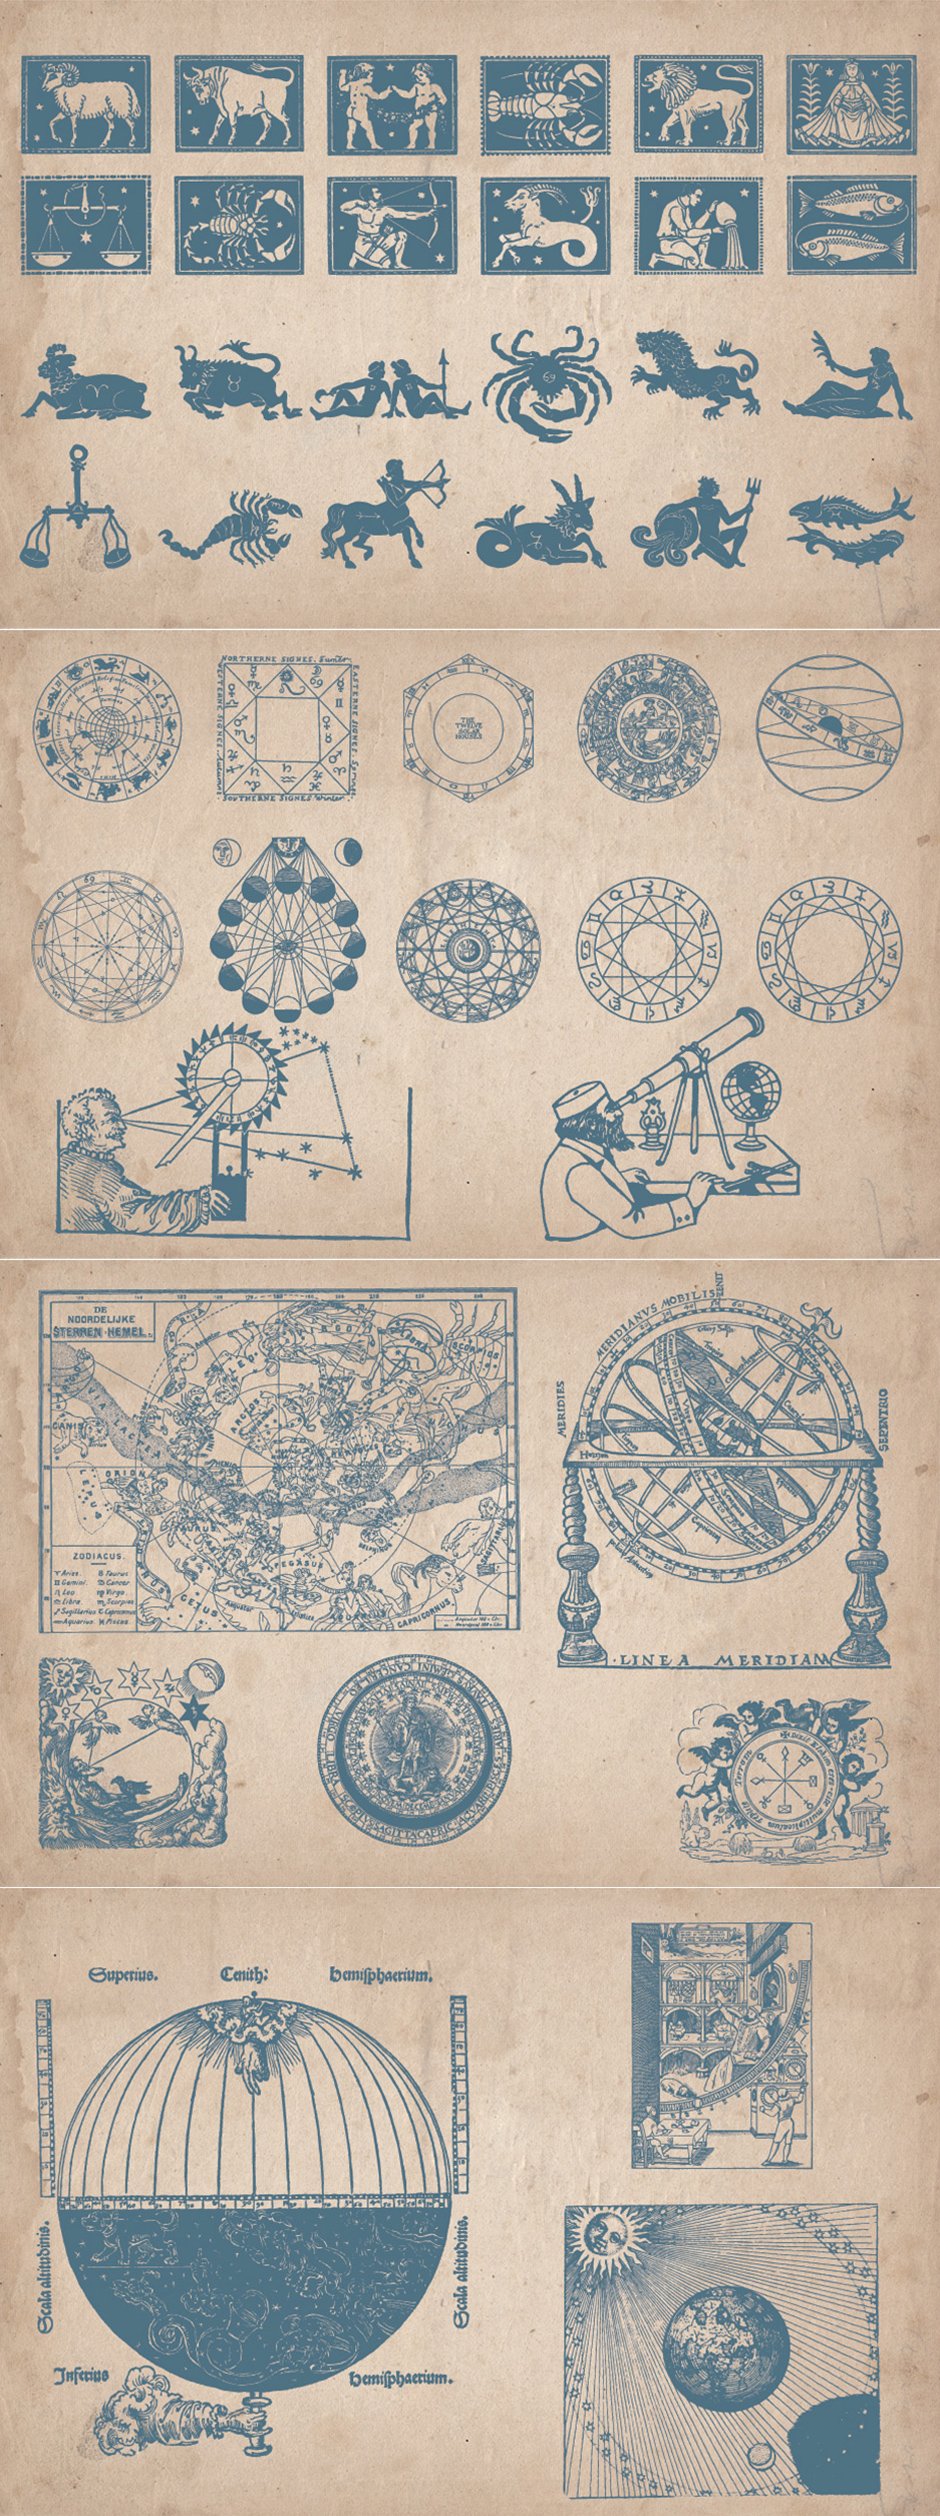 Vintage Astrology Illustrations